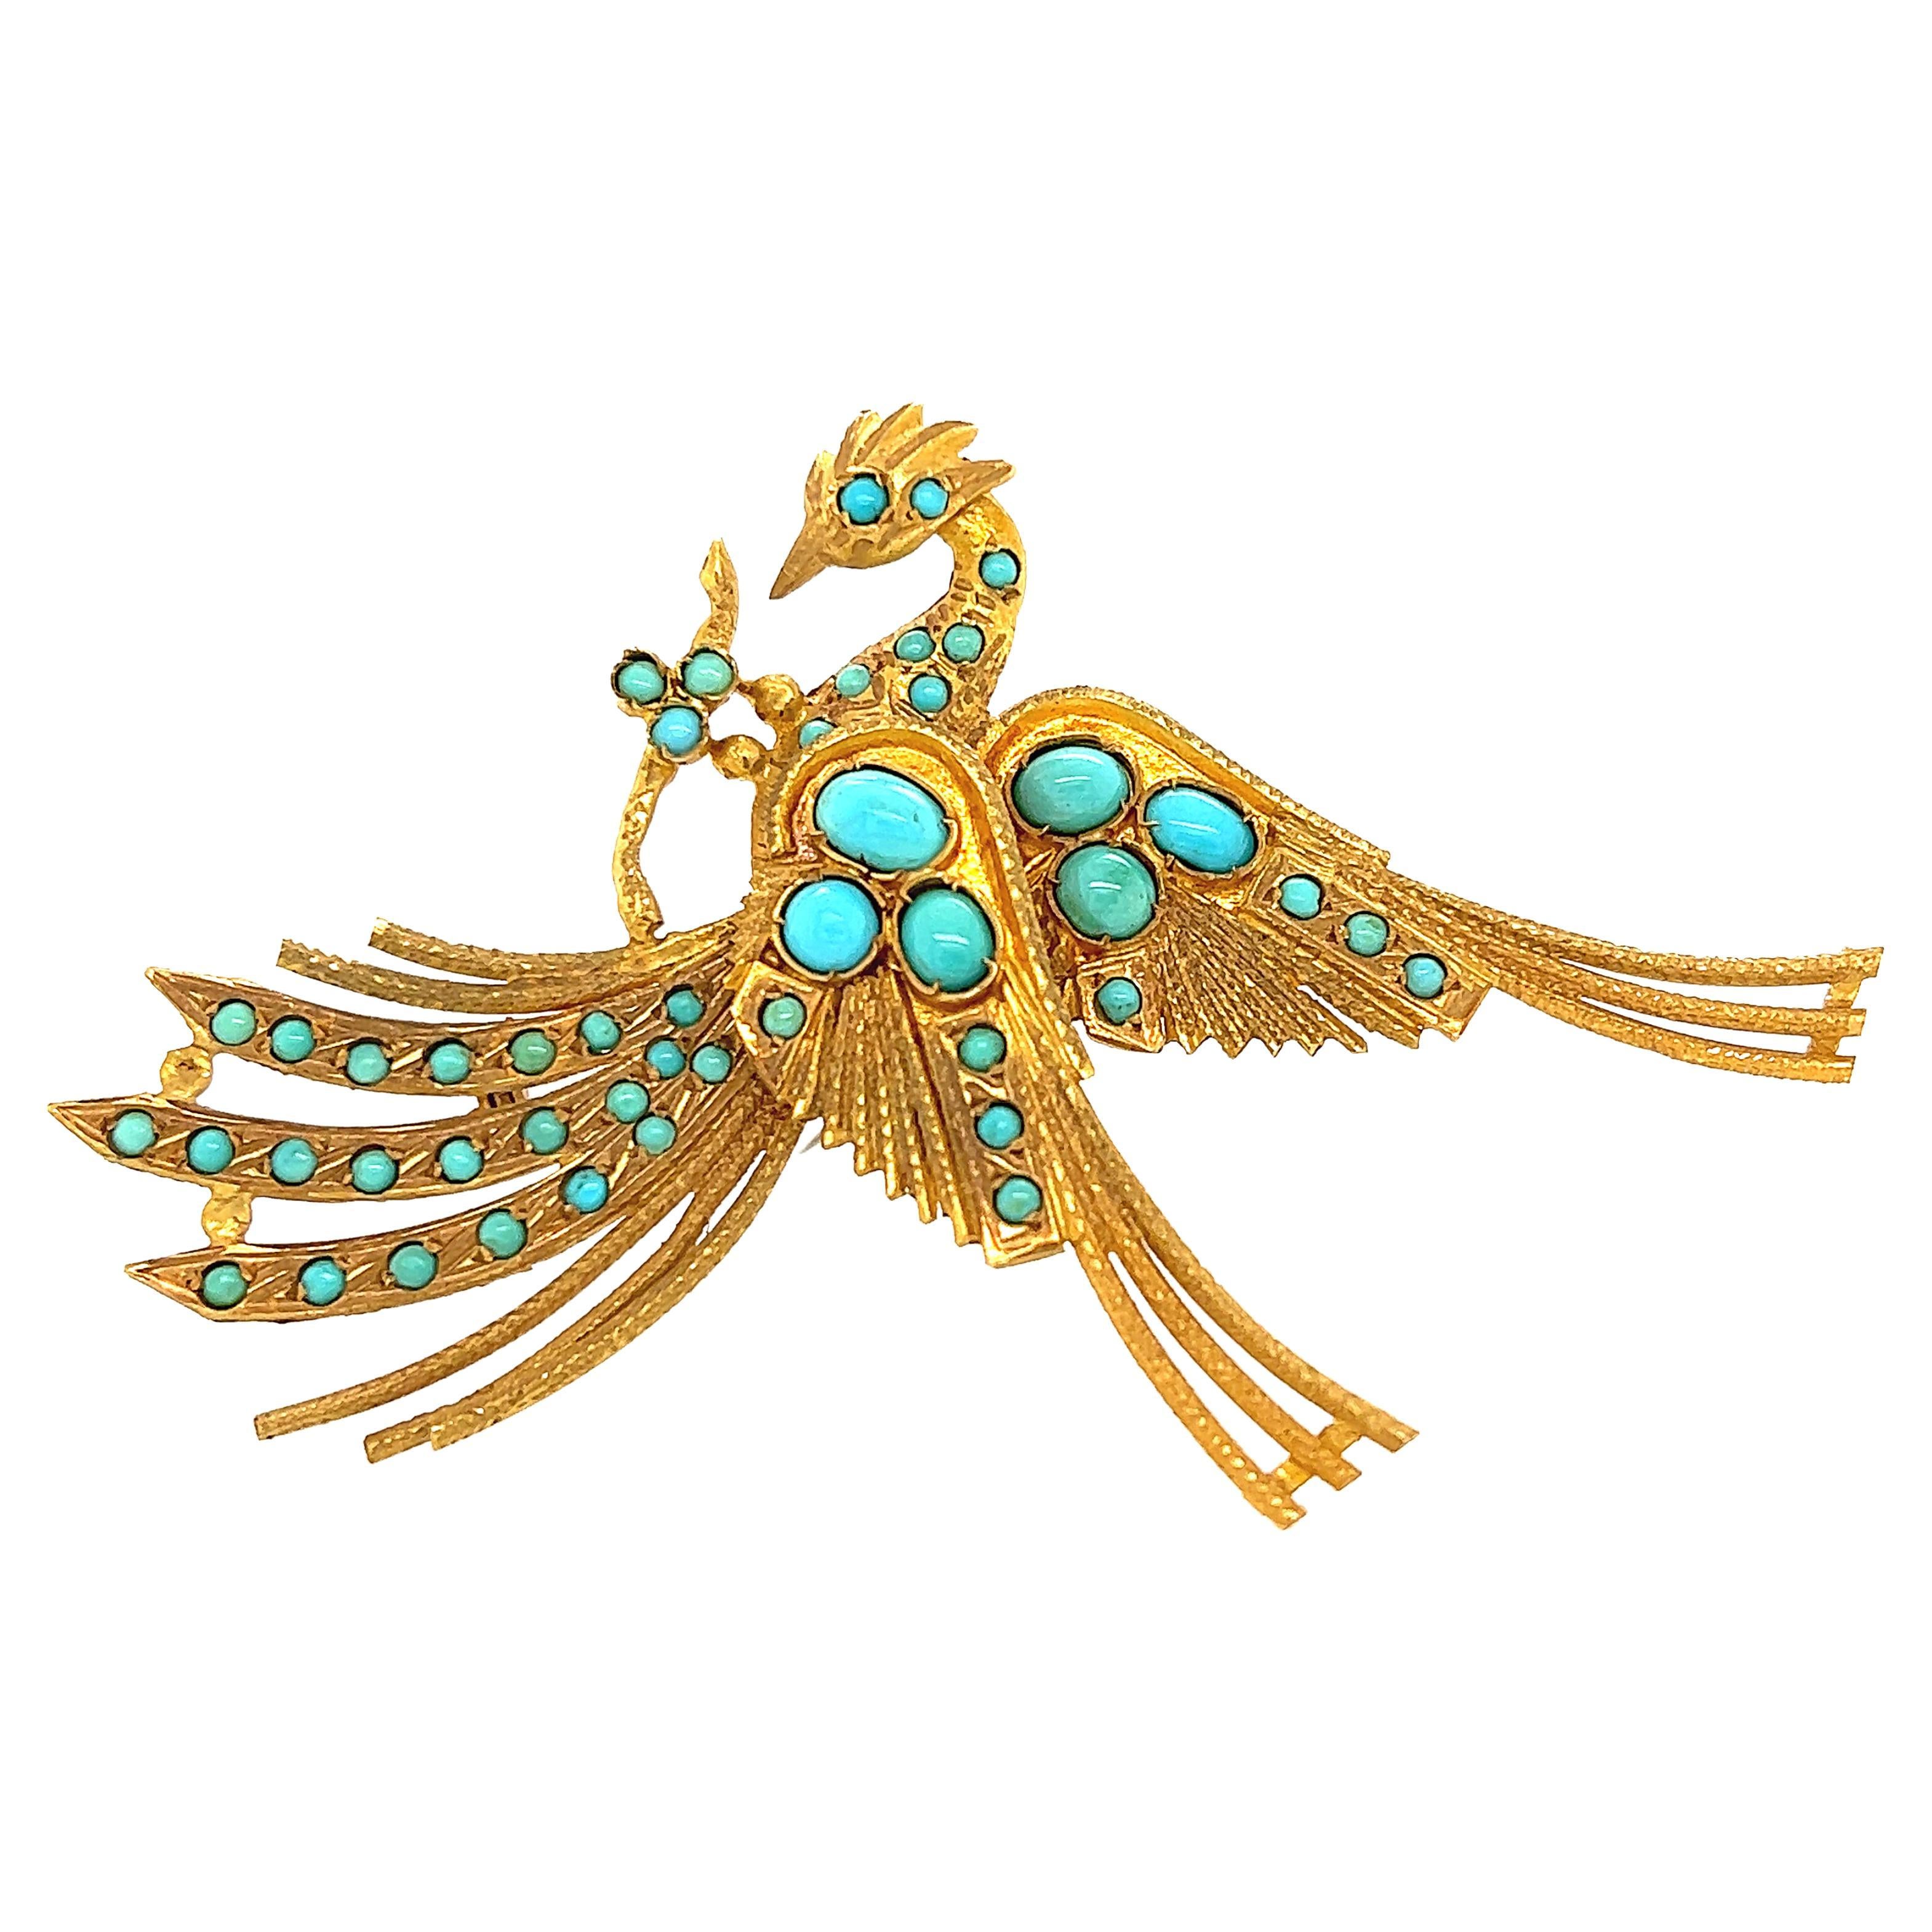 Türkis-Brosche im ägyptischen Revival-Stil, Goldener Phoenix